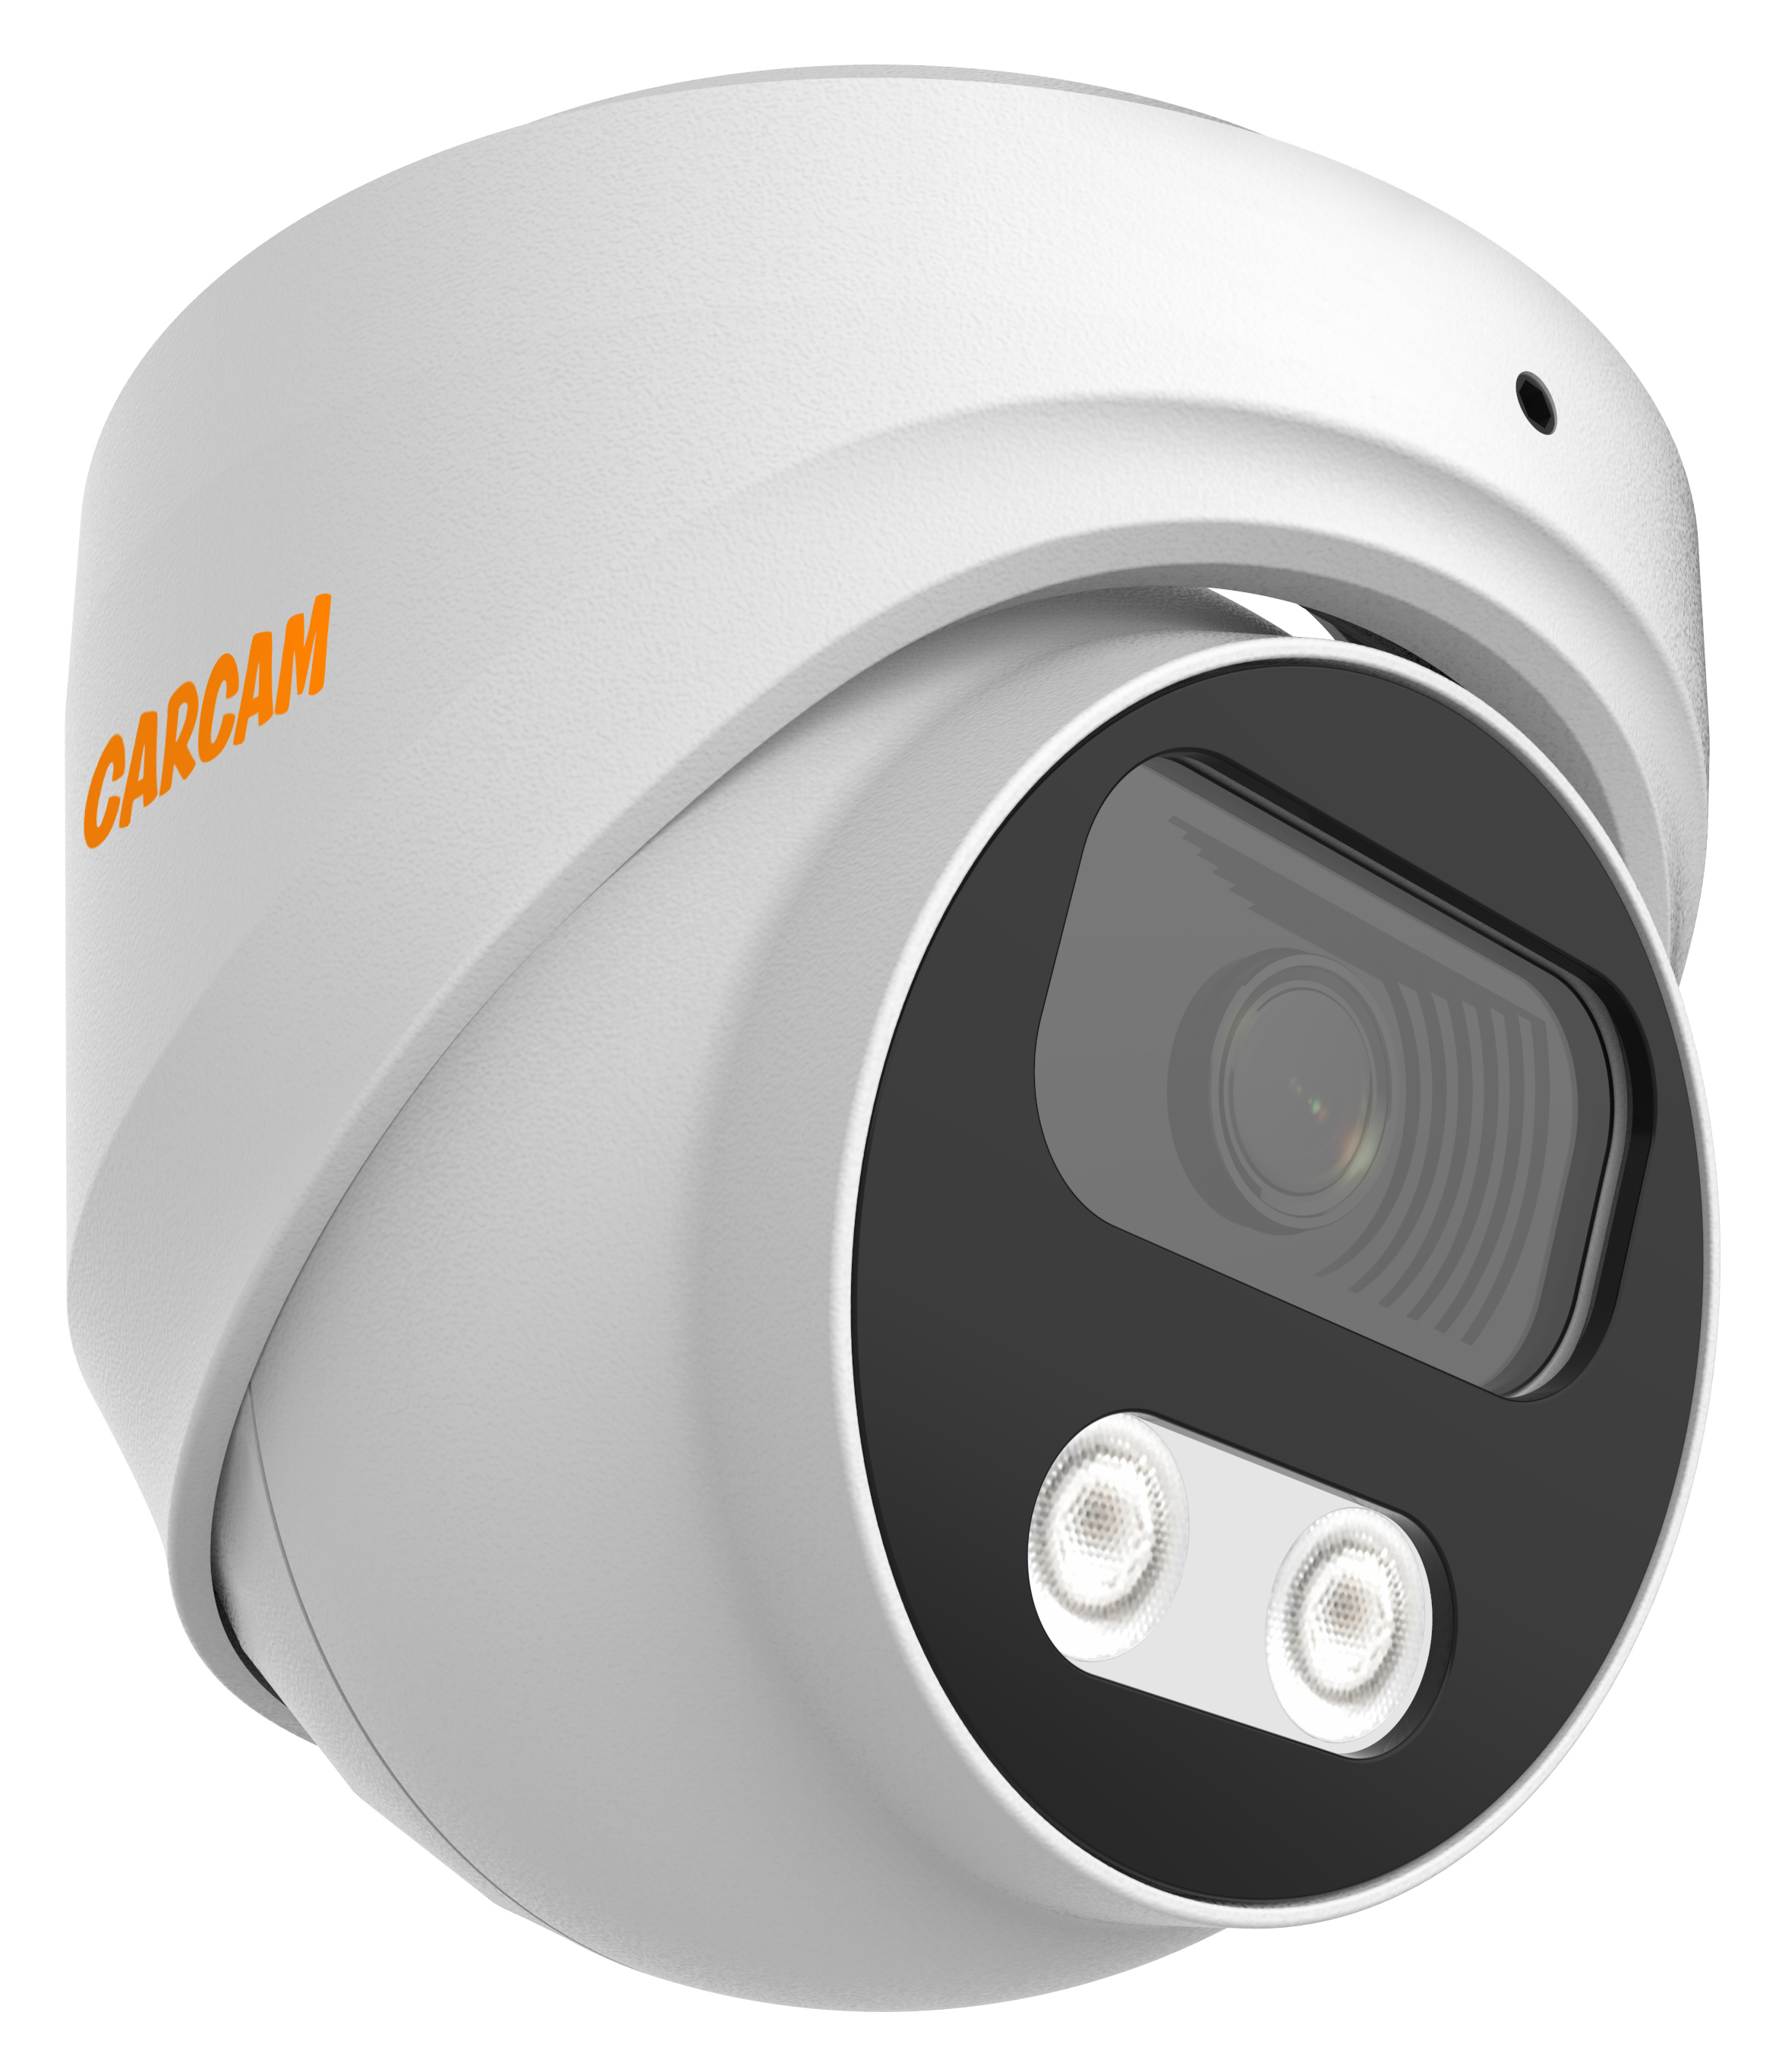 Купольная AHD-камера CARCAM 2MP Dome HD Camera 2076 купольная full hd ip камера с poe микрофоном и ик подсветкой 25 м carcam 2mp dome ip camera 2071m